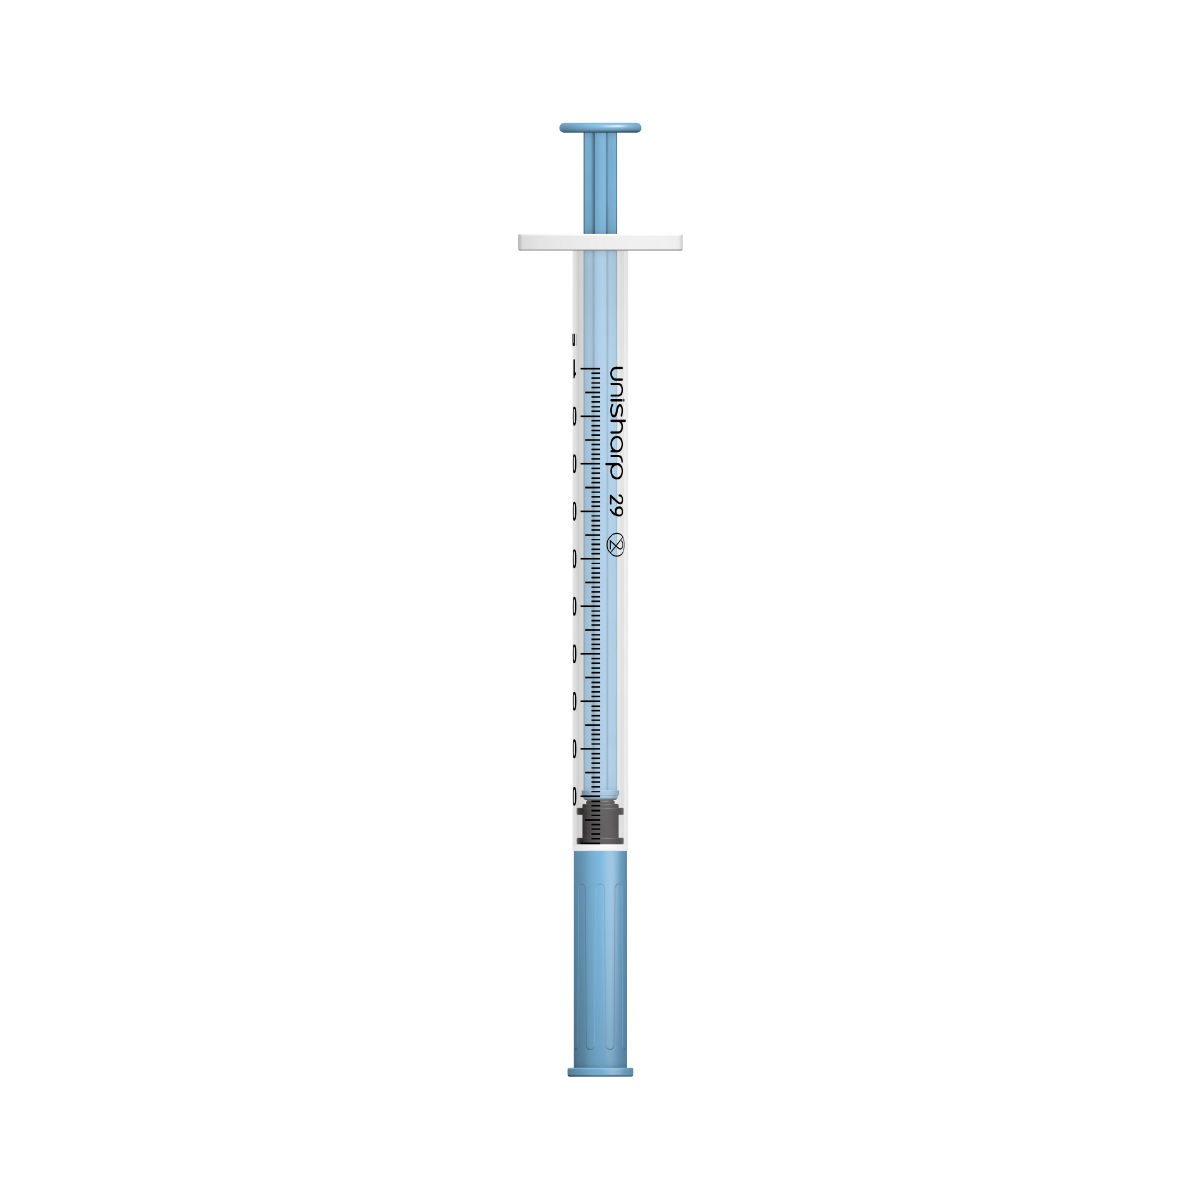 Unisharp 1ml 29G fixed needle syringe: blue